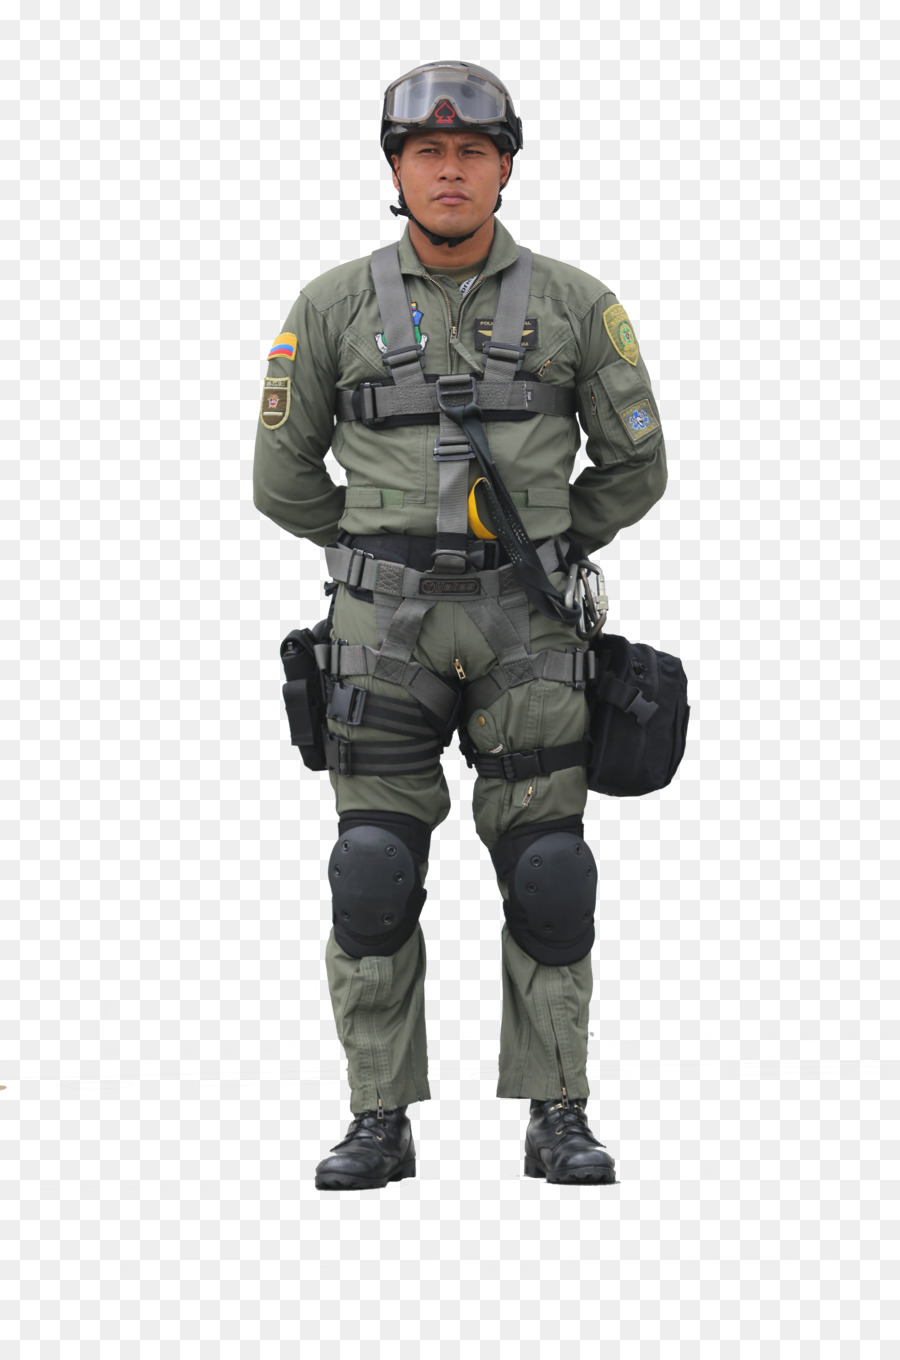 Soldat Militär-uniform der Nationalen Polizei von Kolumbien - Soldat